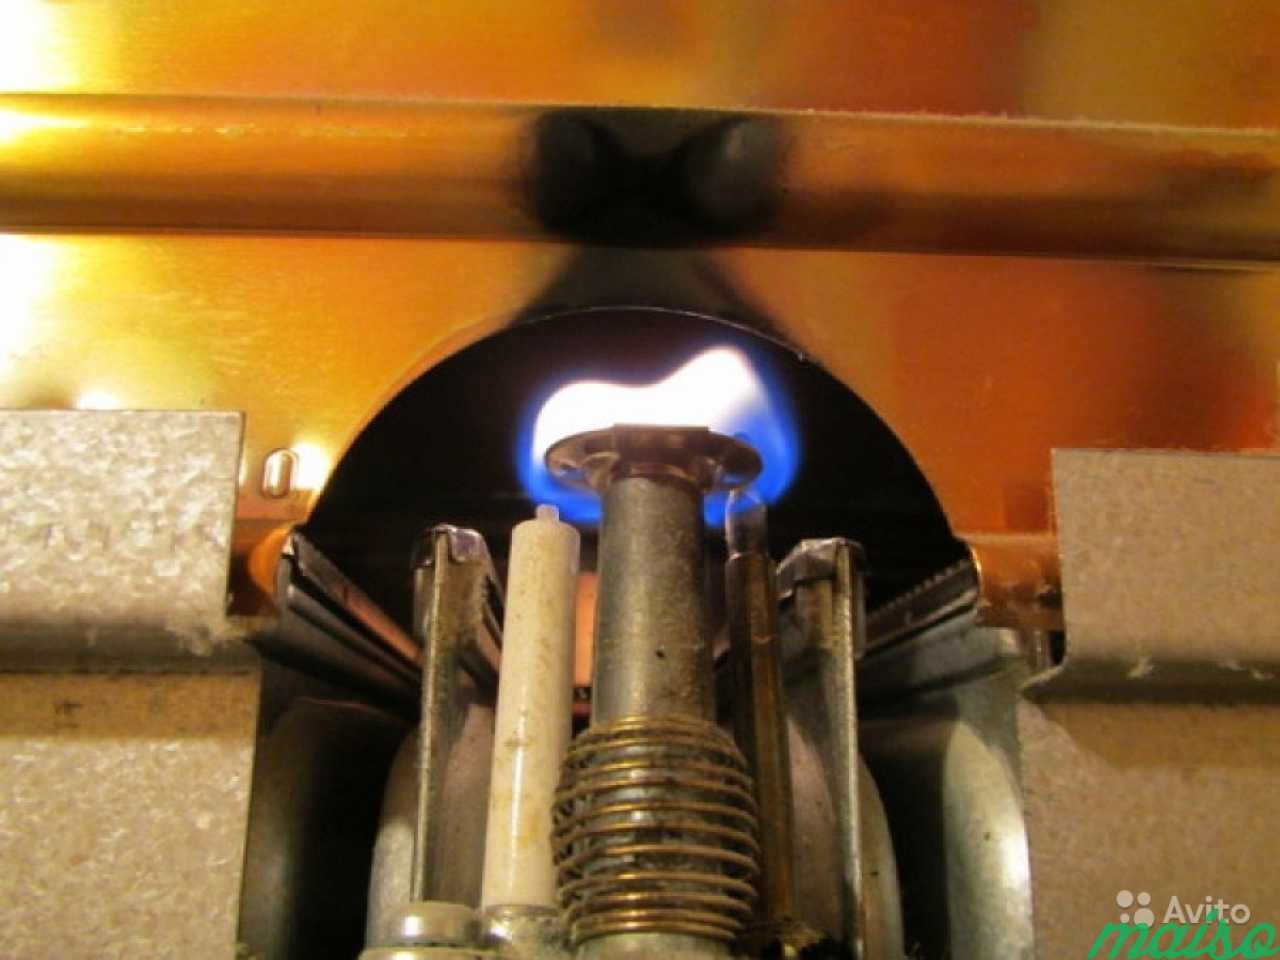 В котле гаснет пламя: восстанавливаем работу горелки - ГазВоркерз